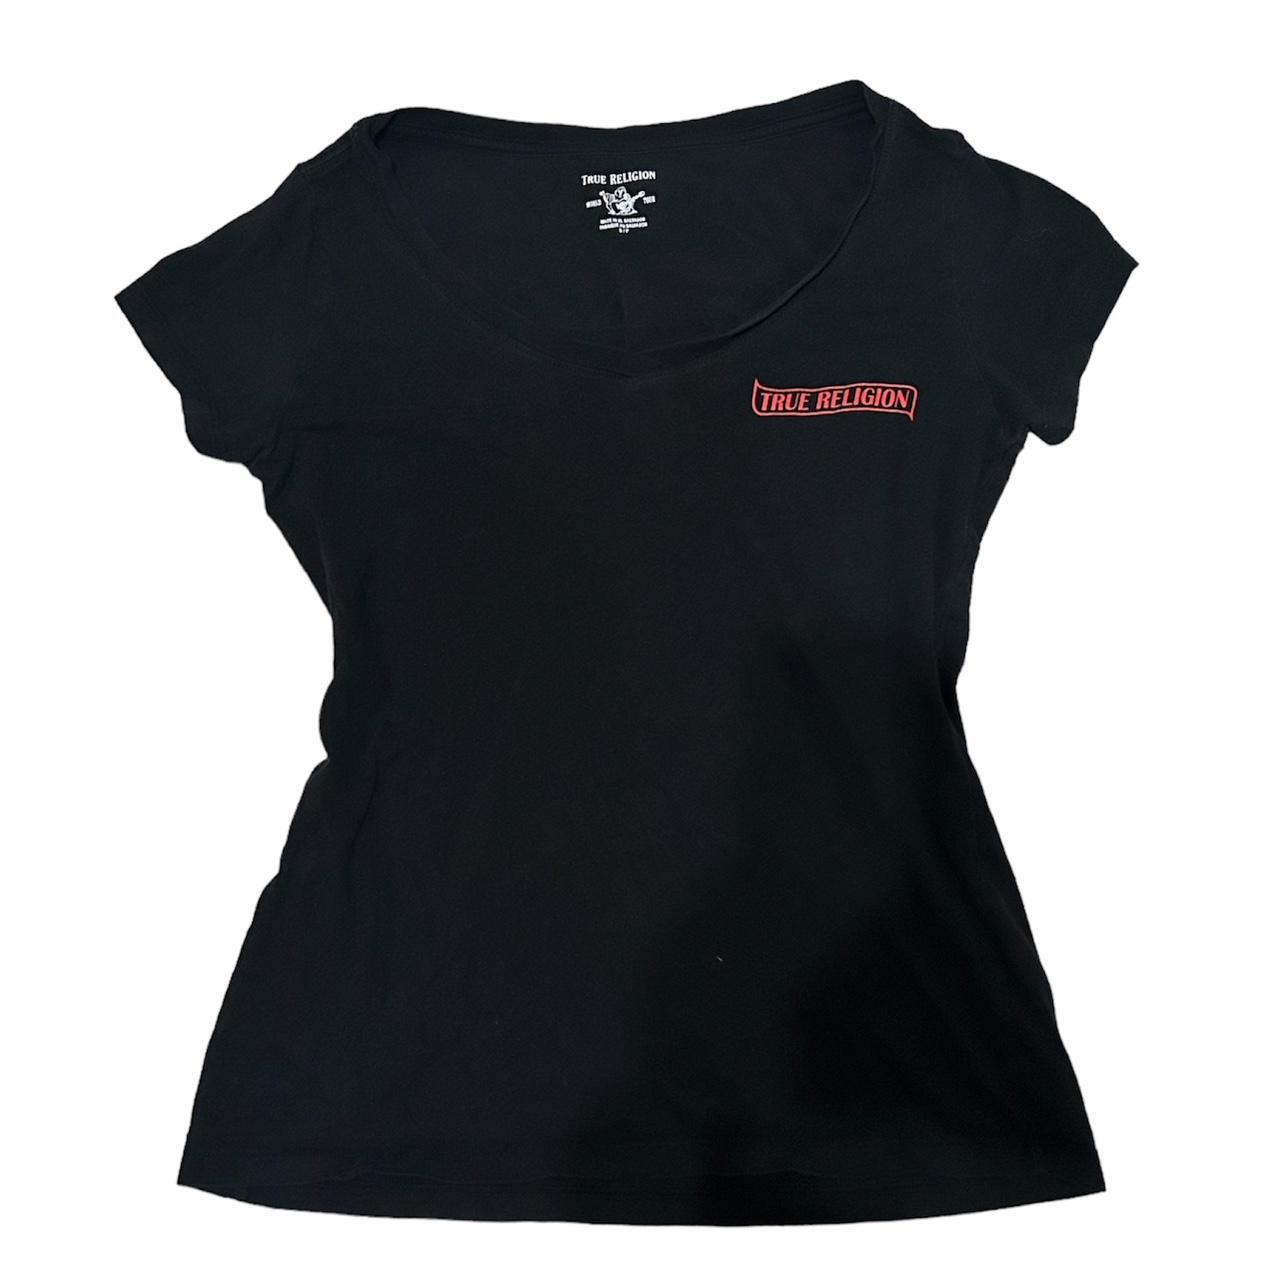 True Religion Black Shirt -size small in women’s... - Depop